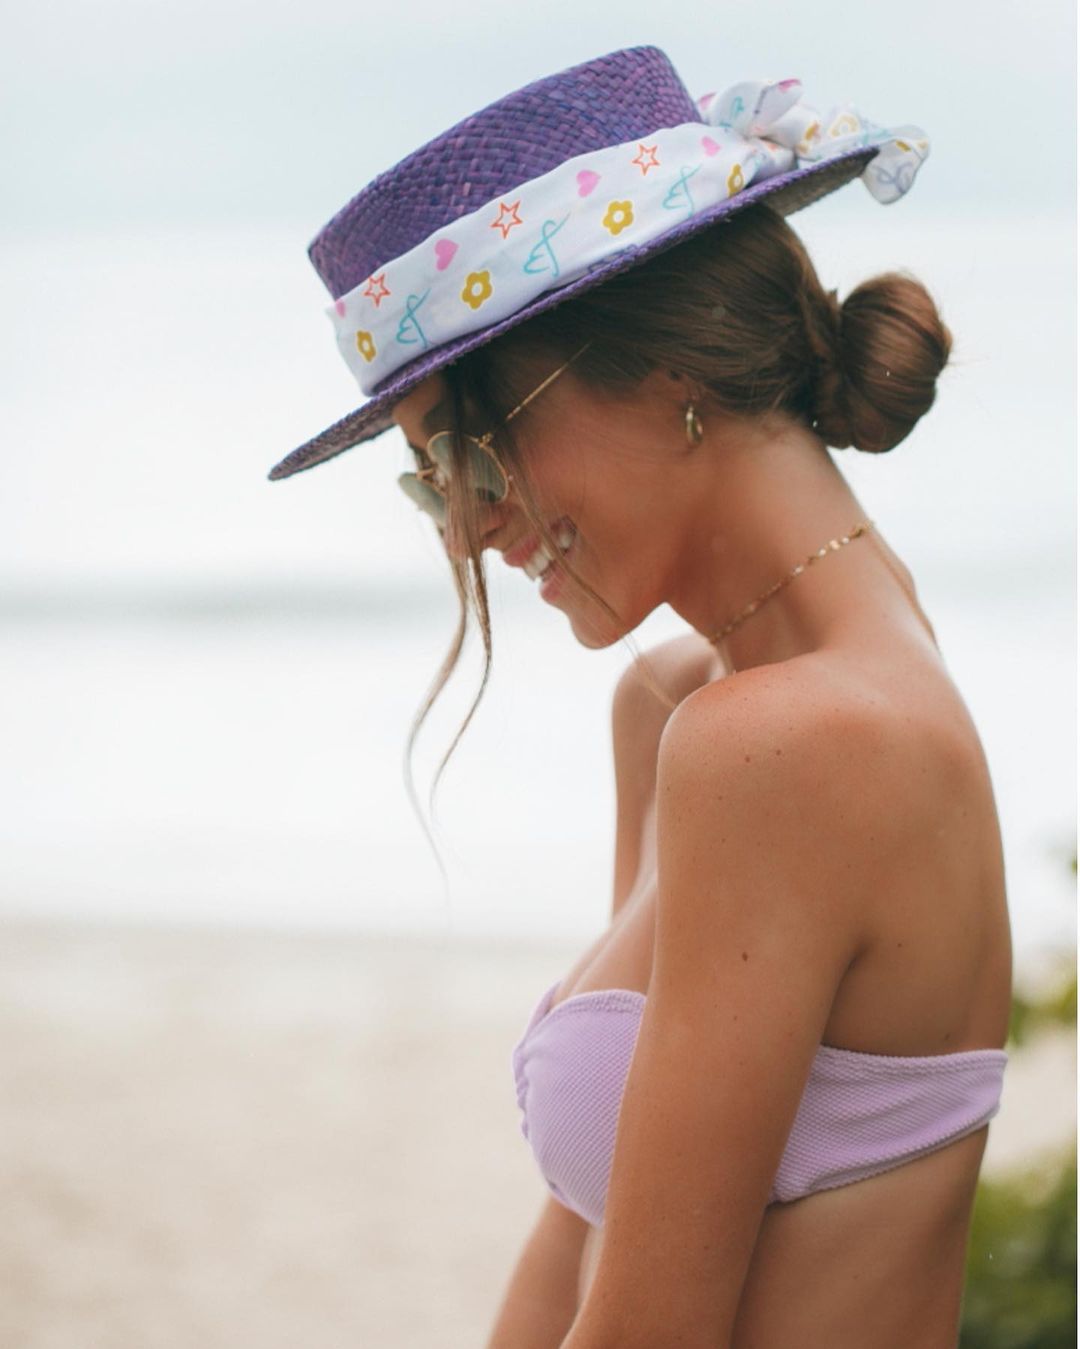 Imagem mostra mulher de chapéu - chapéu para cabelo curto